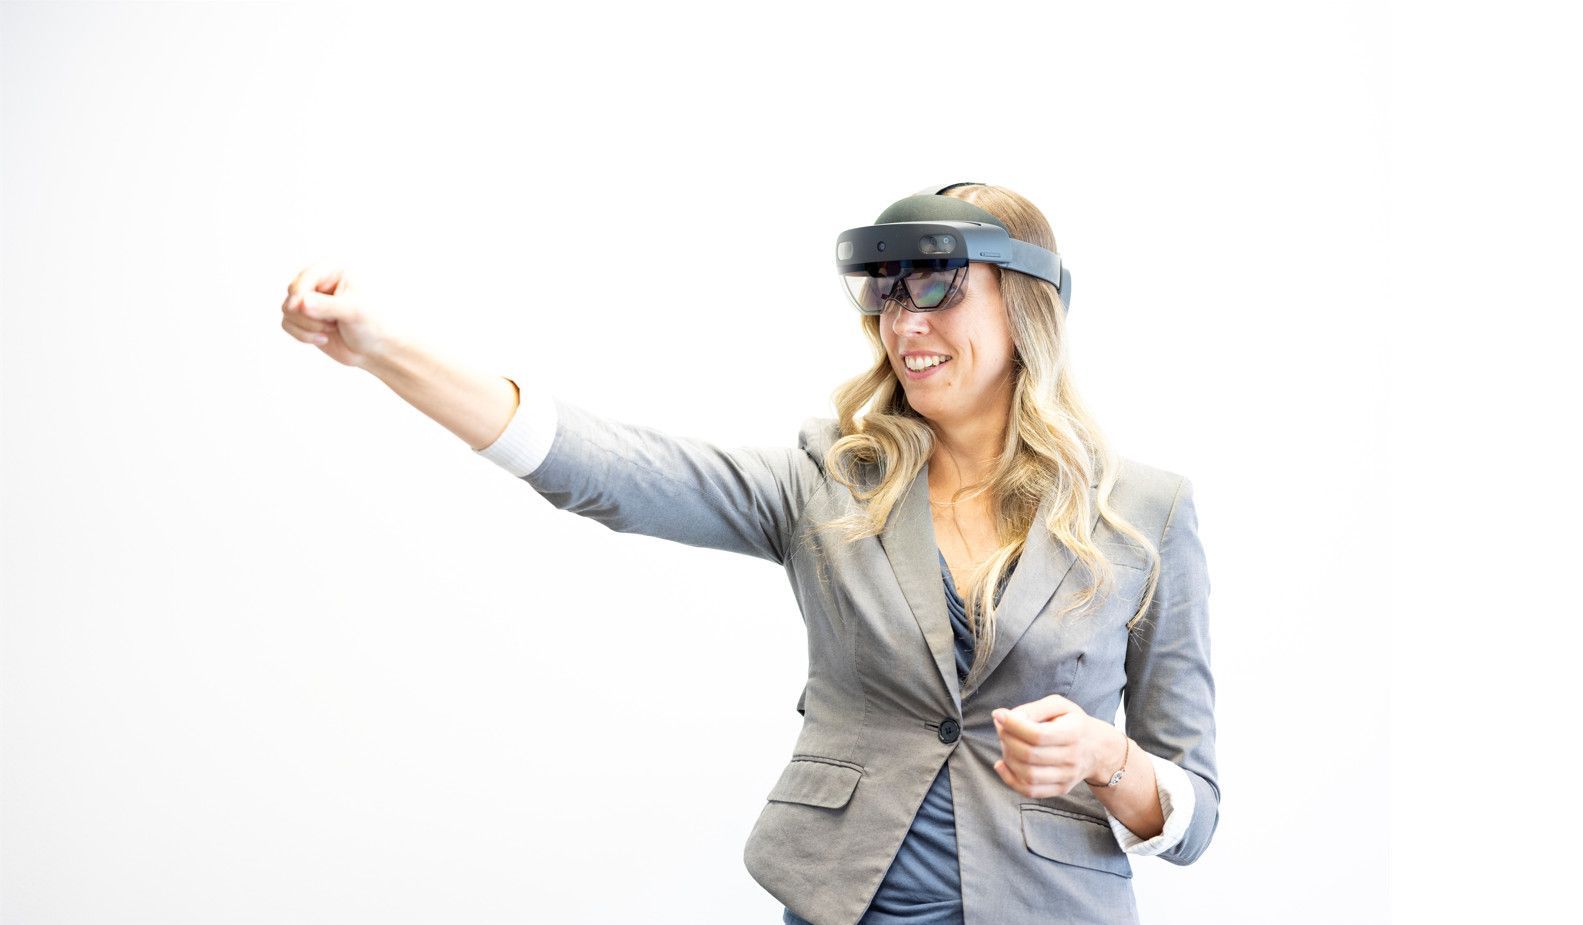 Forscherin mit Augmented Reality-Brille zeigt mit deResearcher wearing augmented reality glasses points her index finger to the left.m Zeigefinger nach links